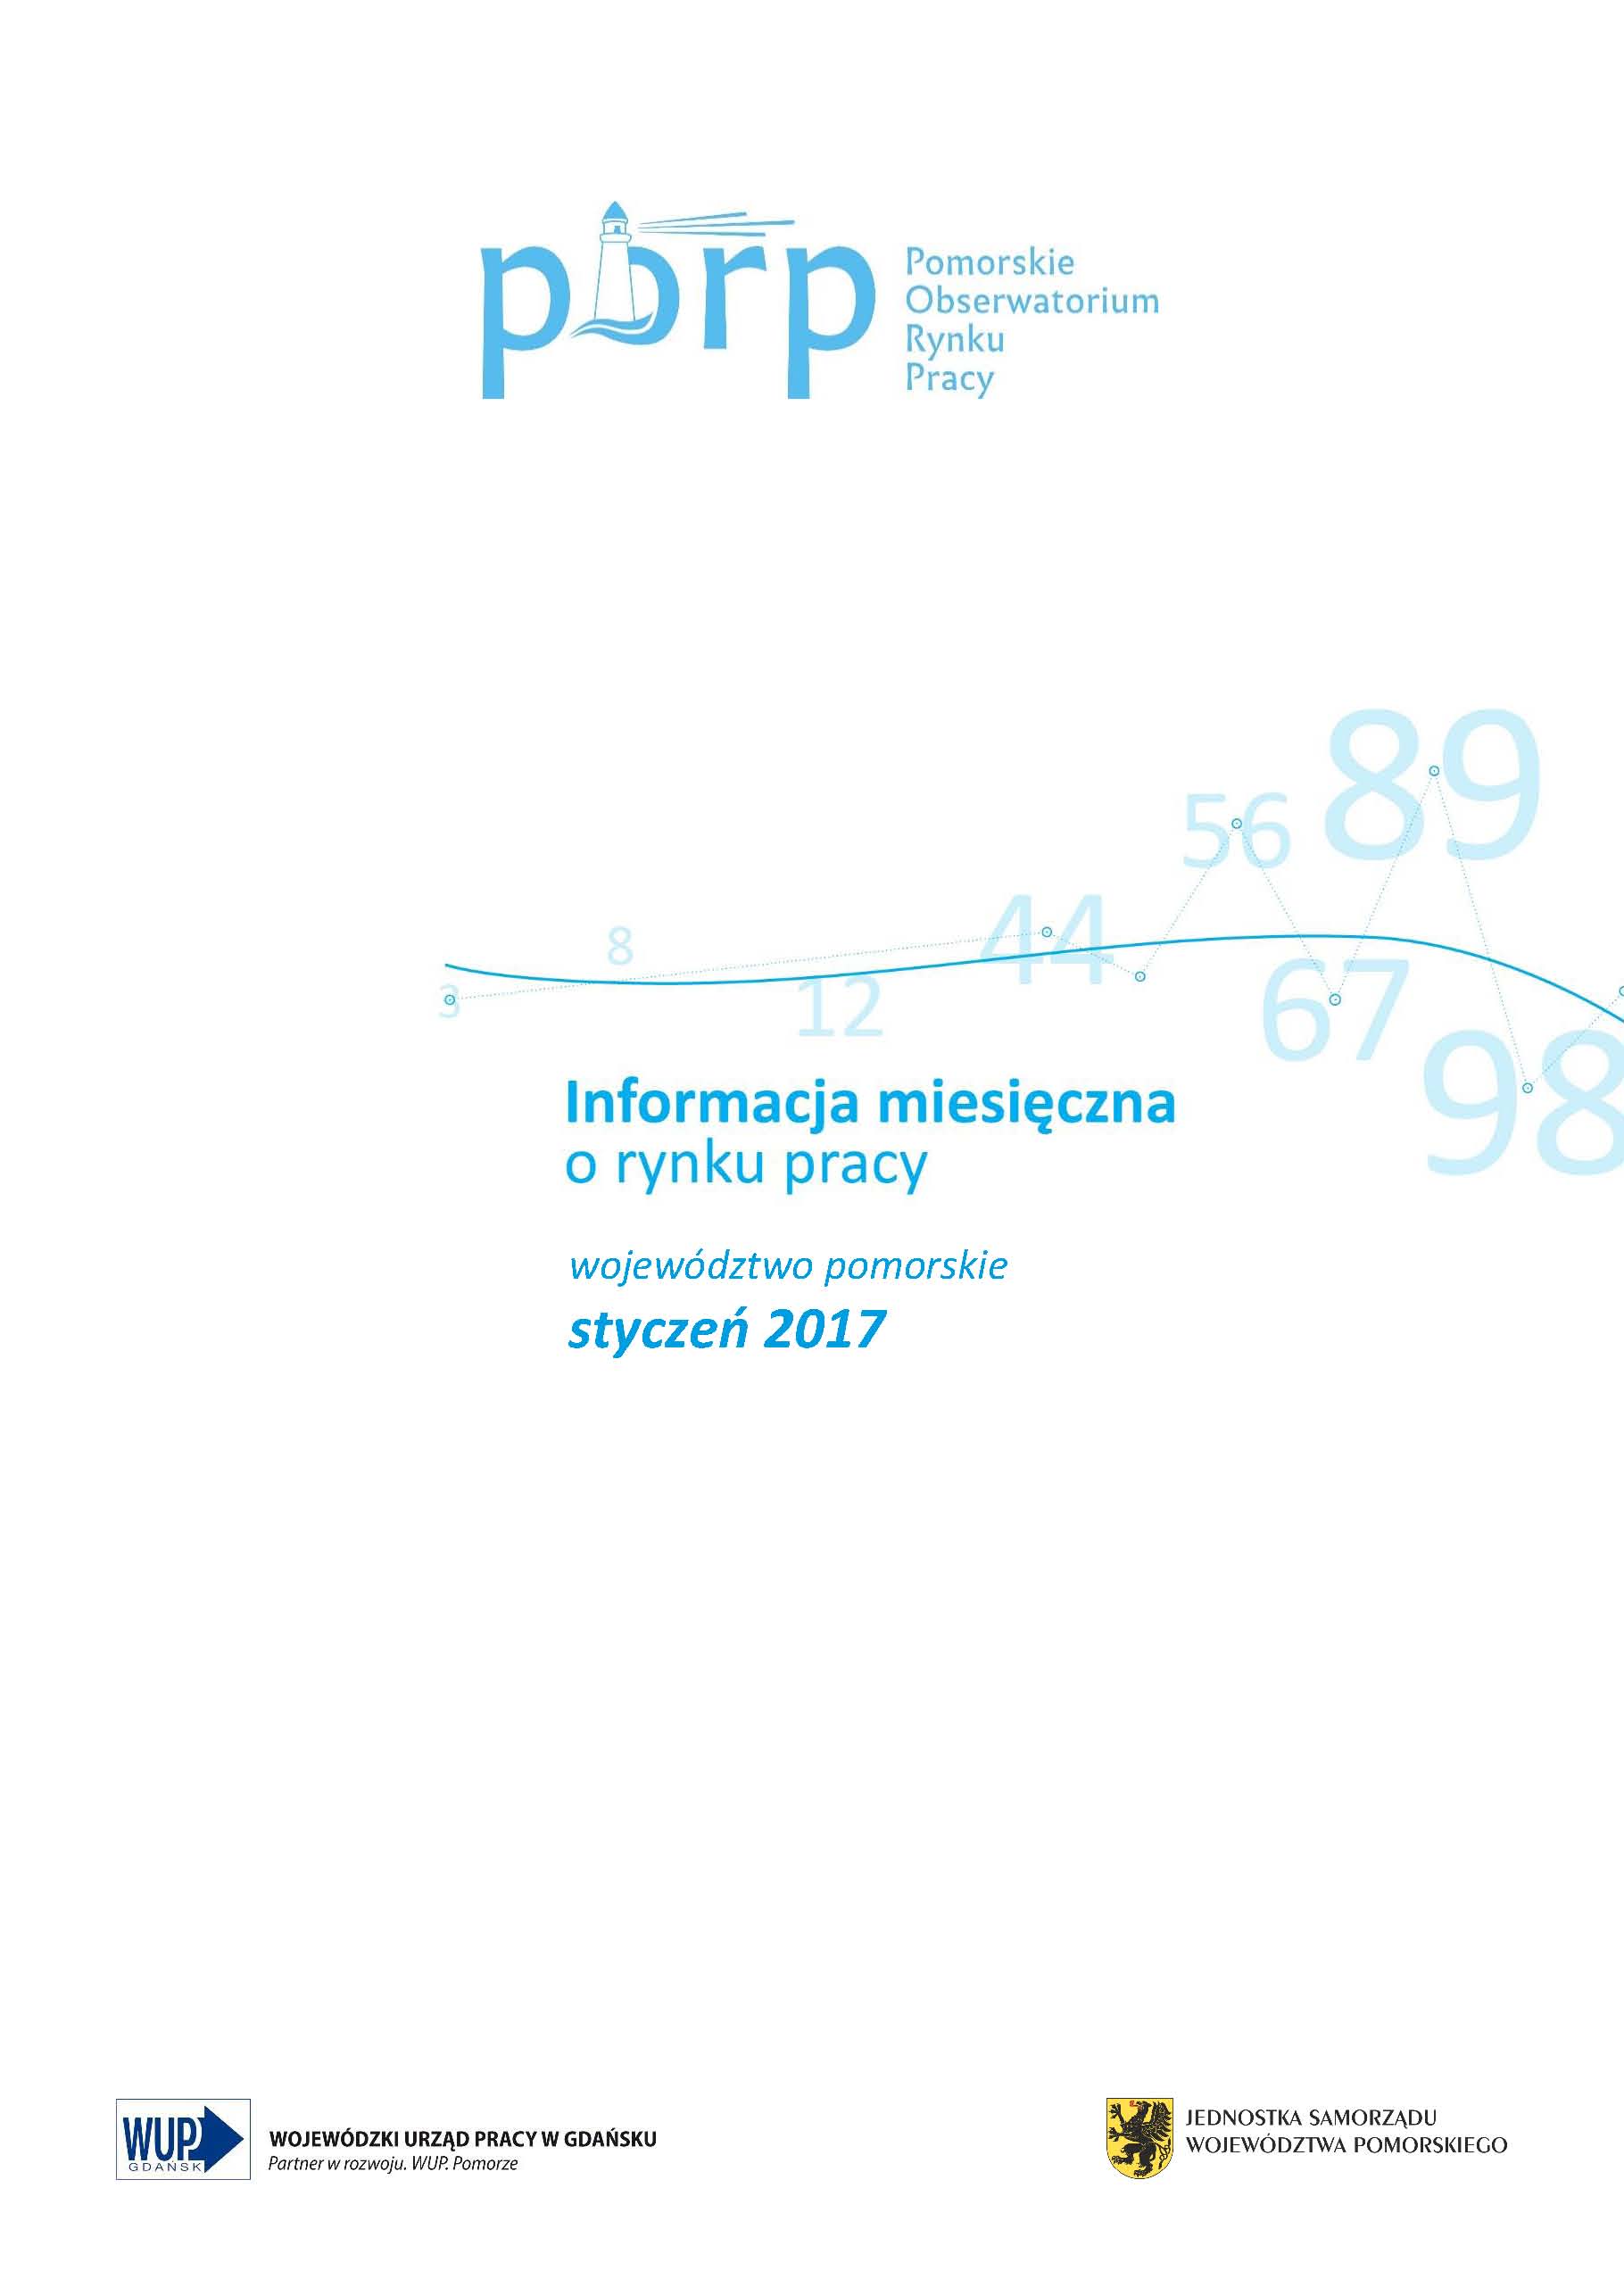 Informacja miesięczna o rynku pracy - województwo pomorskie, styczeń 2017